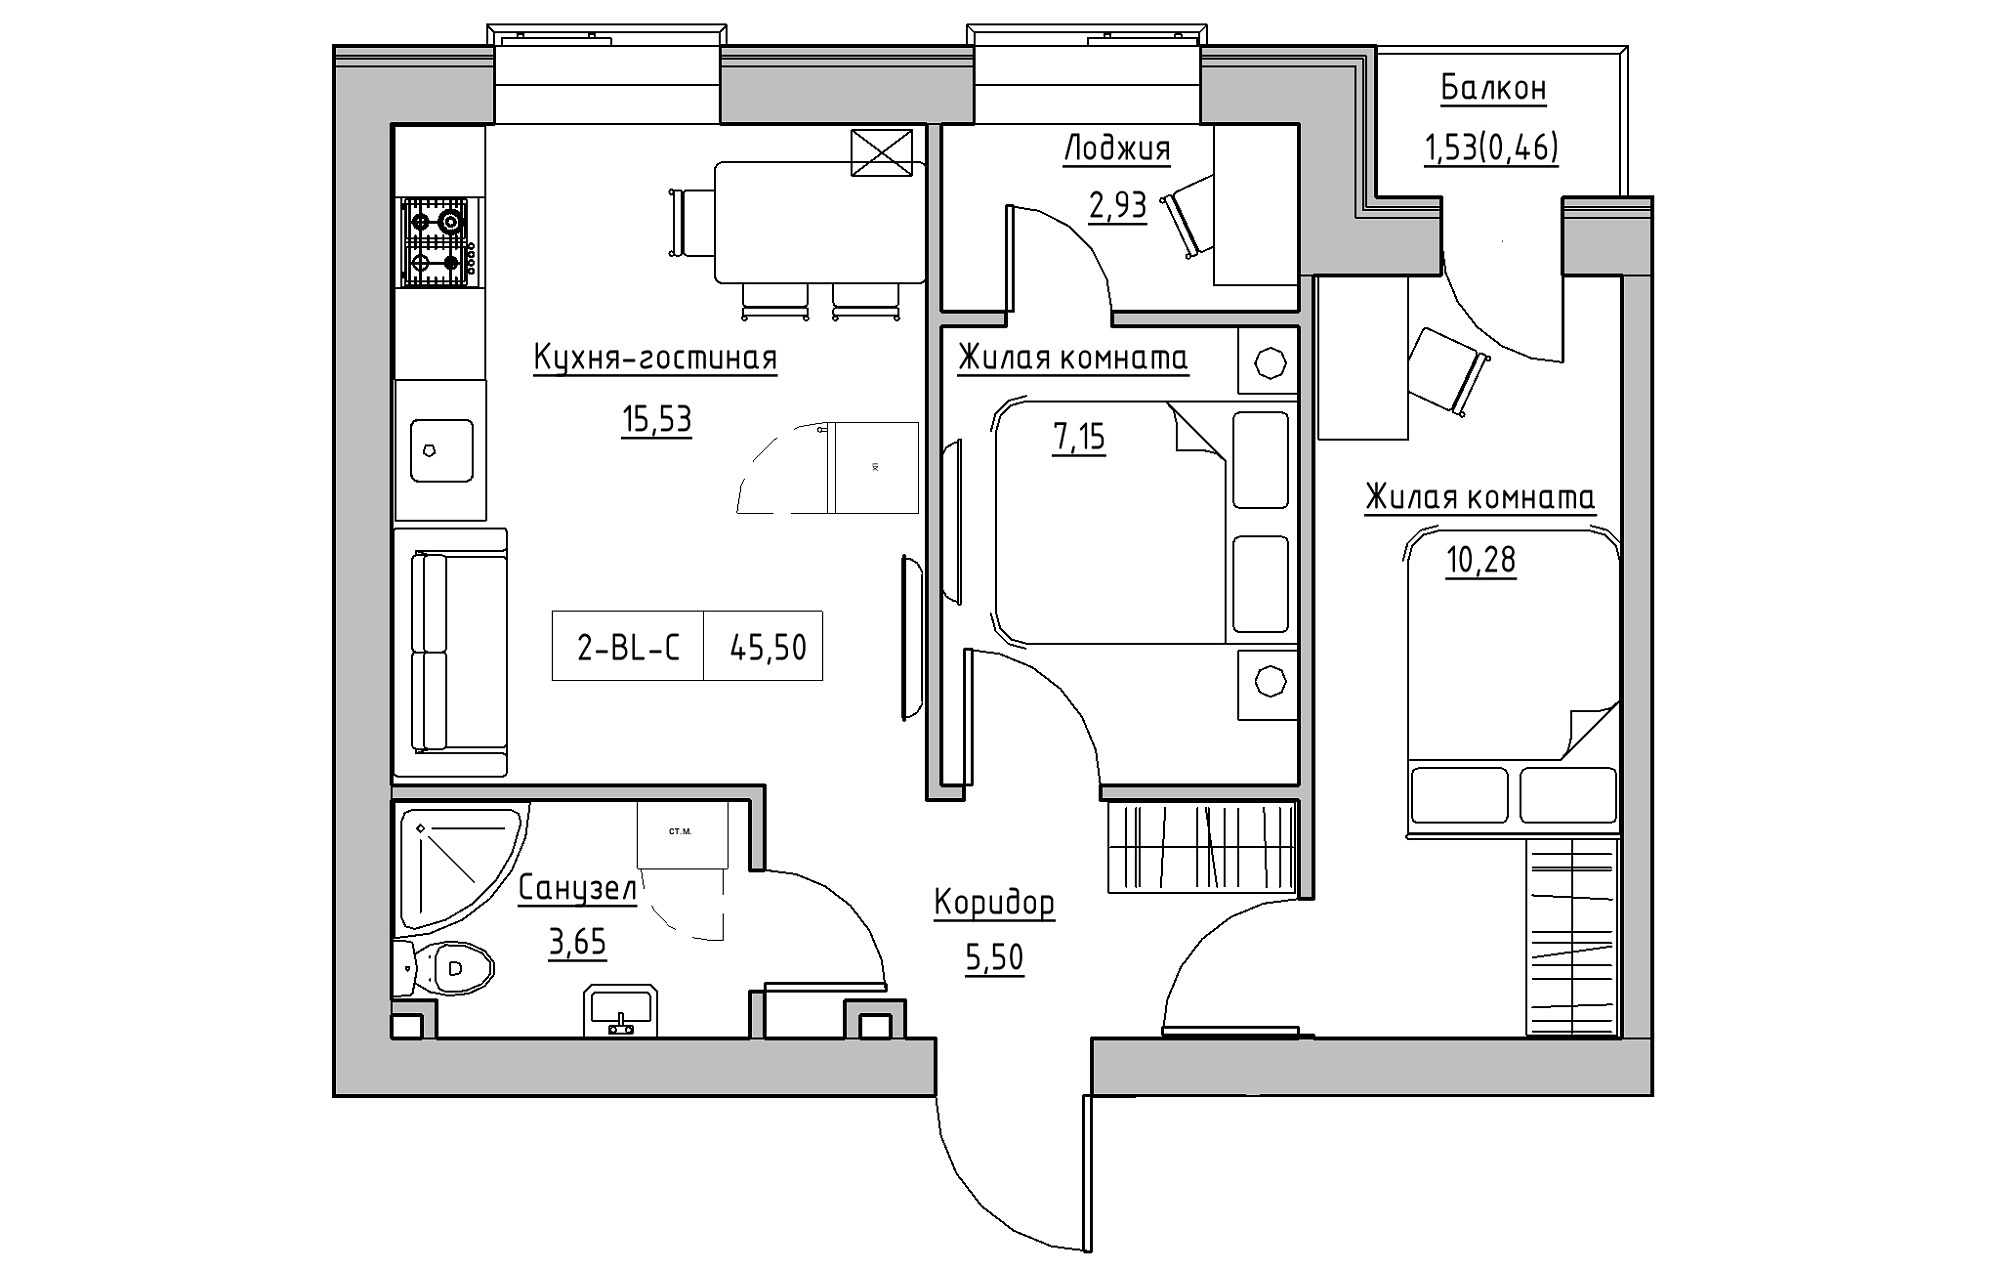 Планування 2-к квартира площею 45.5м2, KS-018-04/0008.